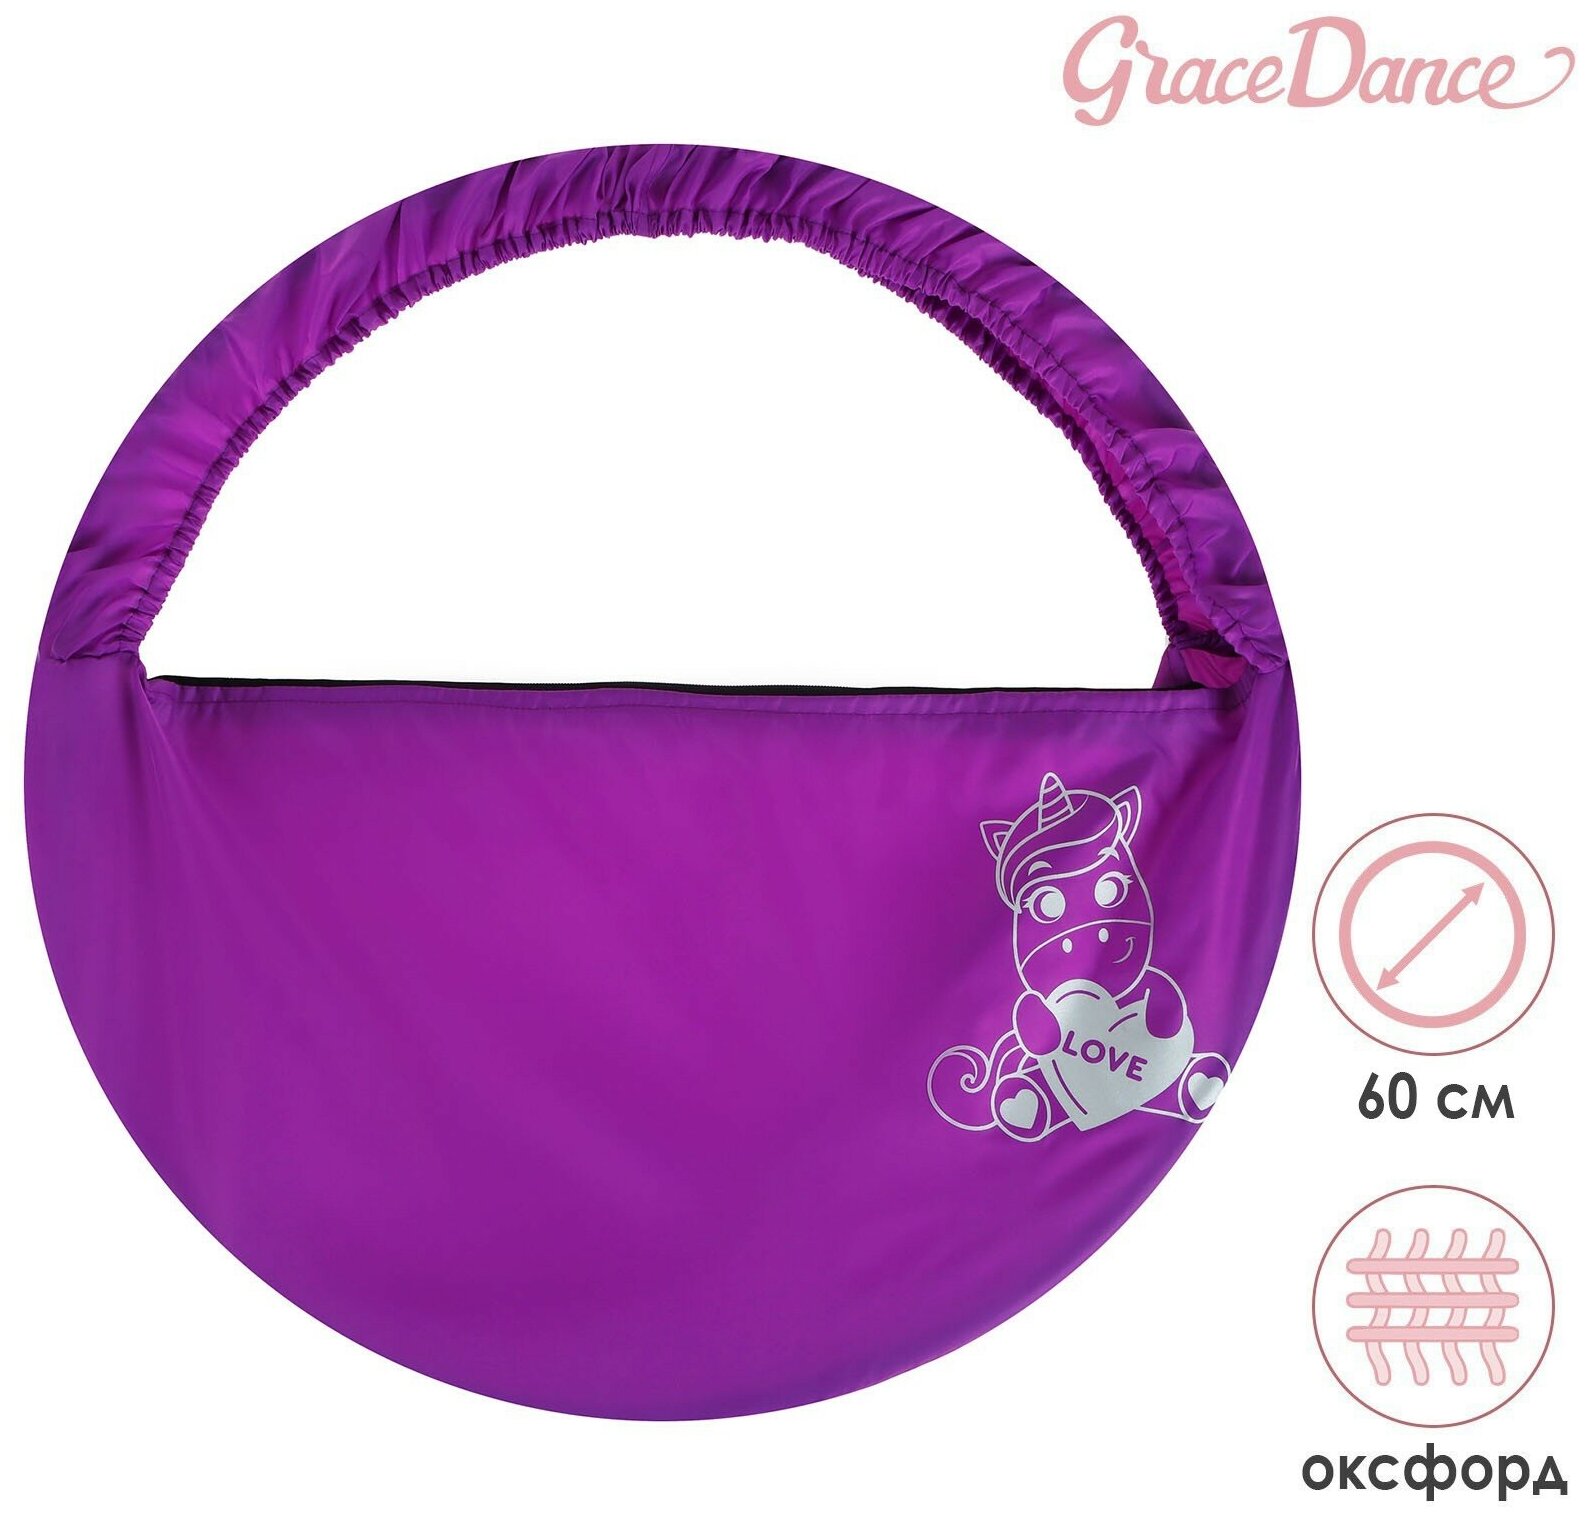 Чехол Grace Dance «Сердце», для обруча диаметром 80 см, цвет фиолетовый, серебристый